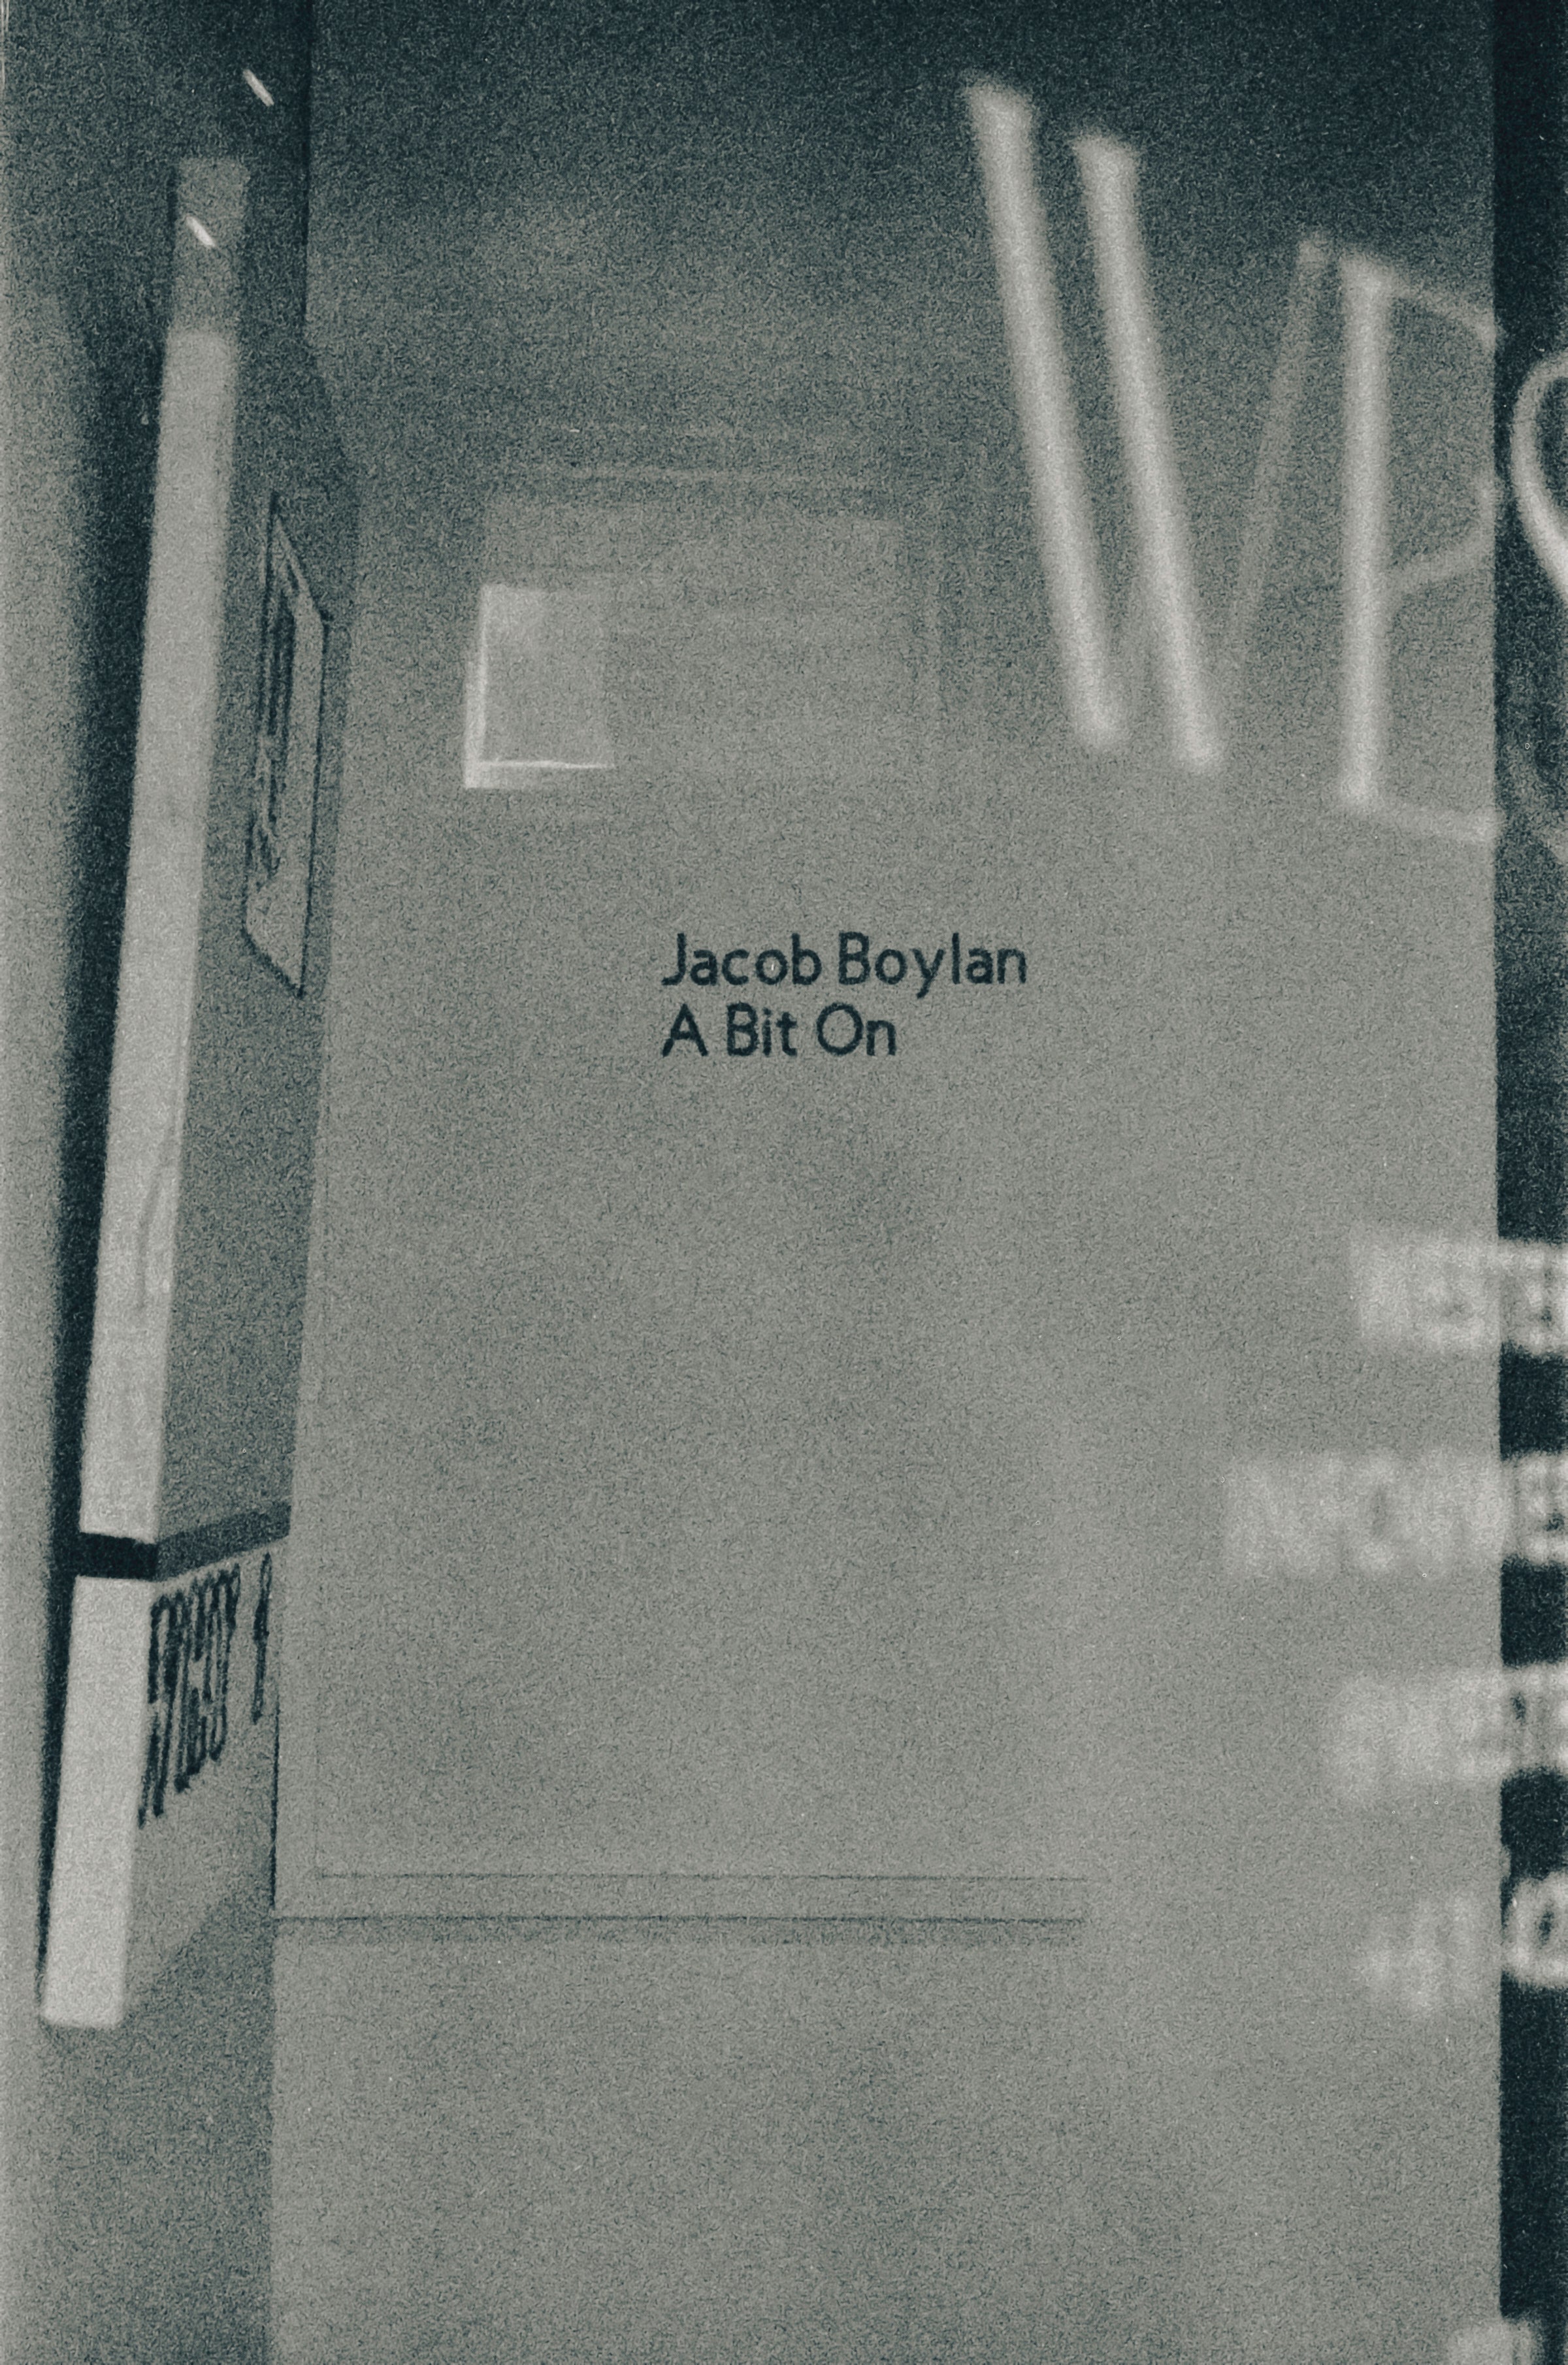 A BIT ON - JACOB BOYLAN